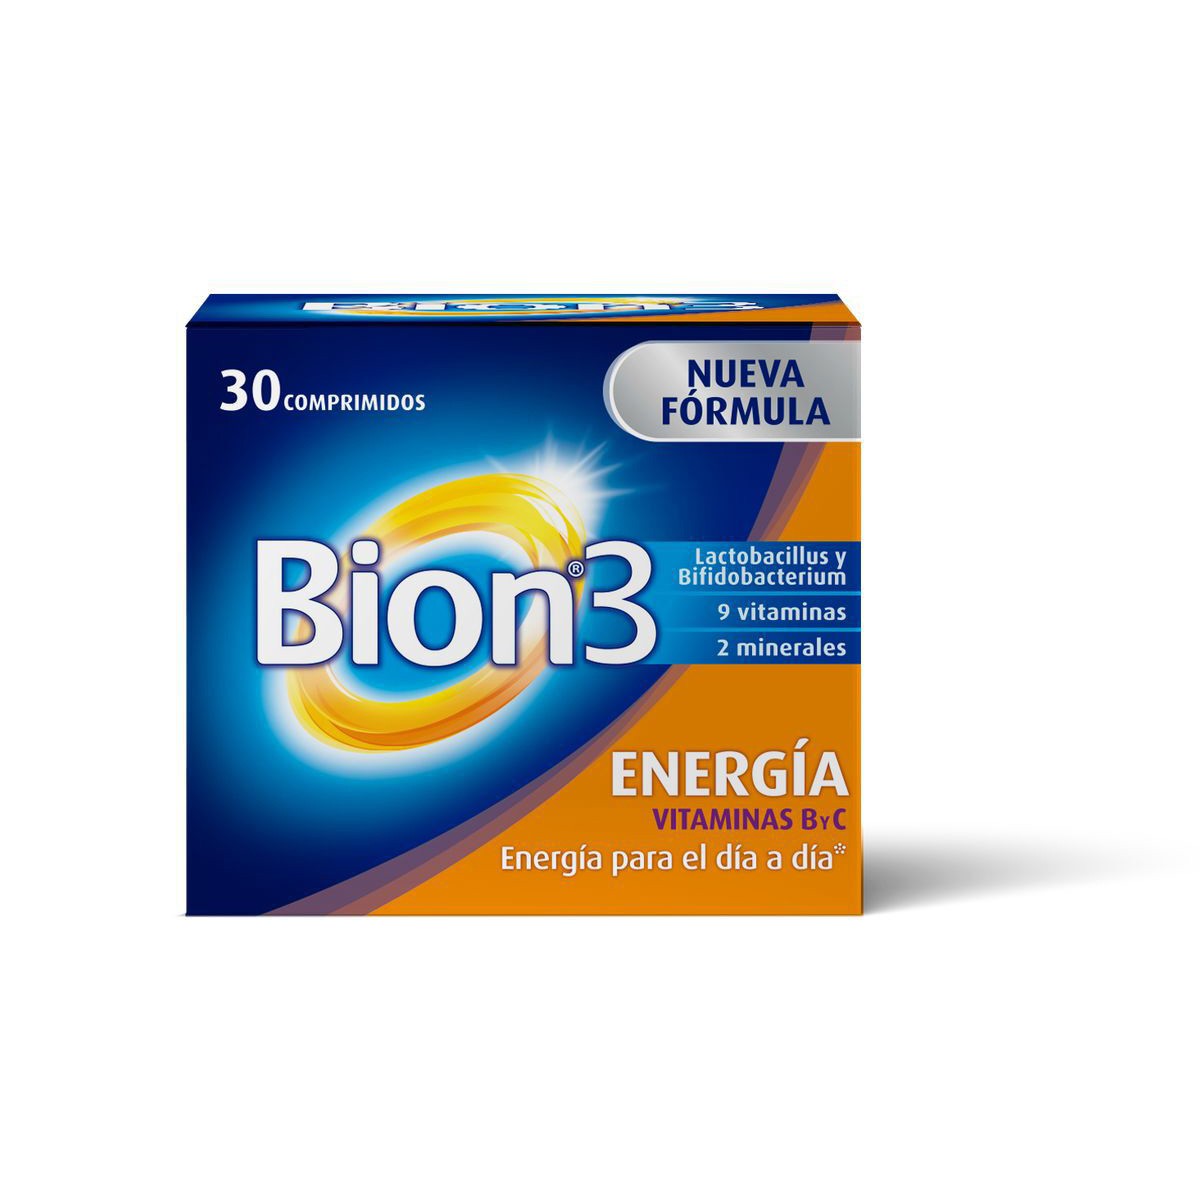 Imagen de Bion 3 energía 30 comprimidos